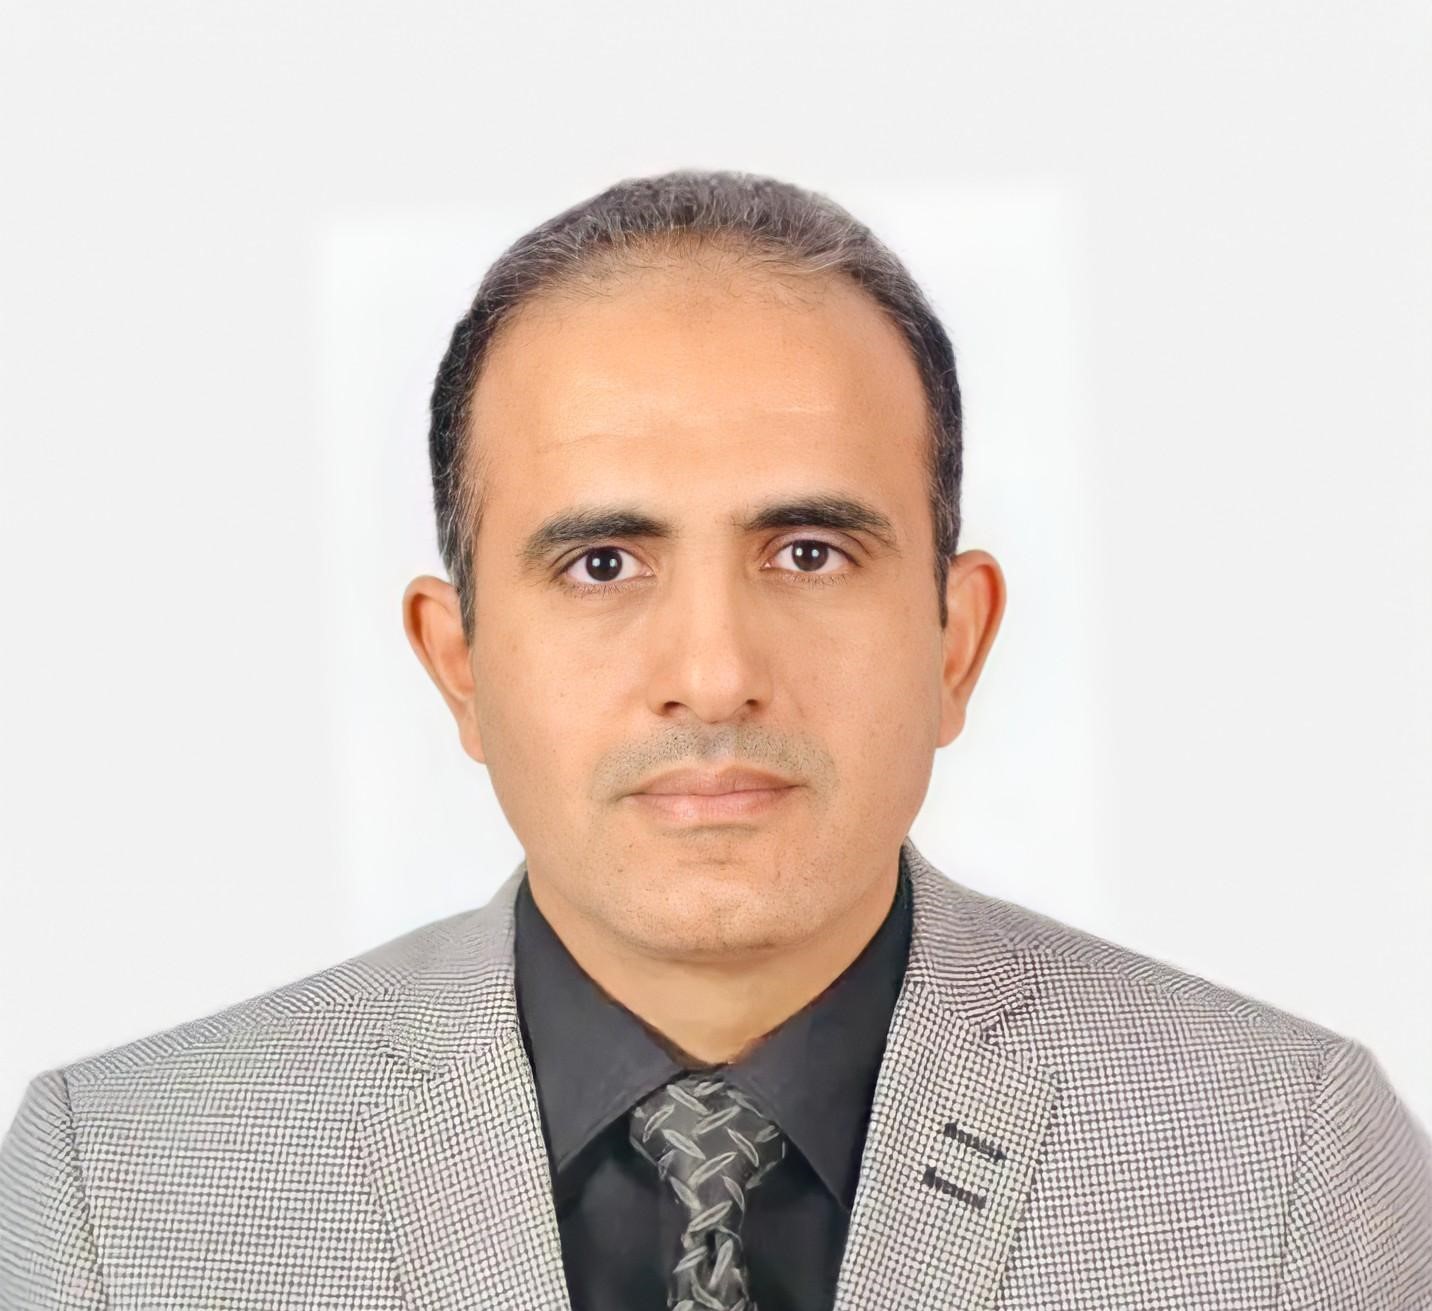 وزير الصحة العامة والسكان الدكتور قاسم بحيبح